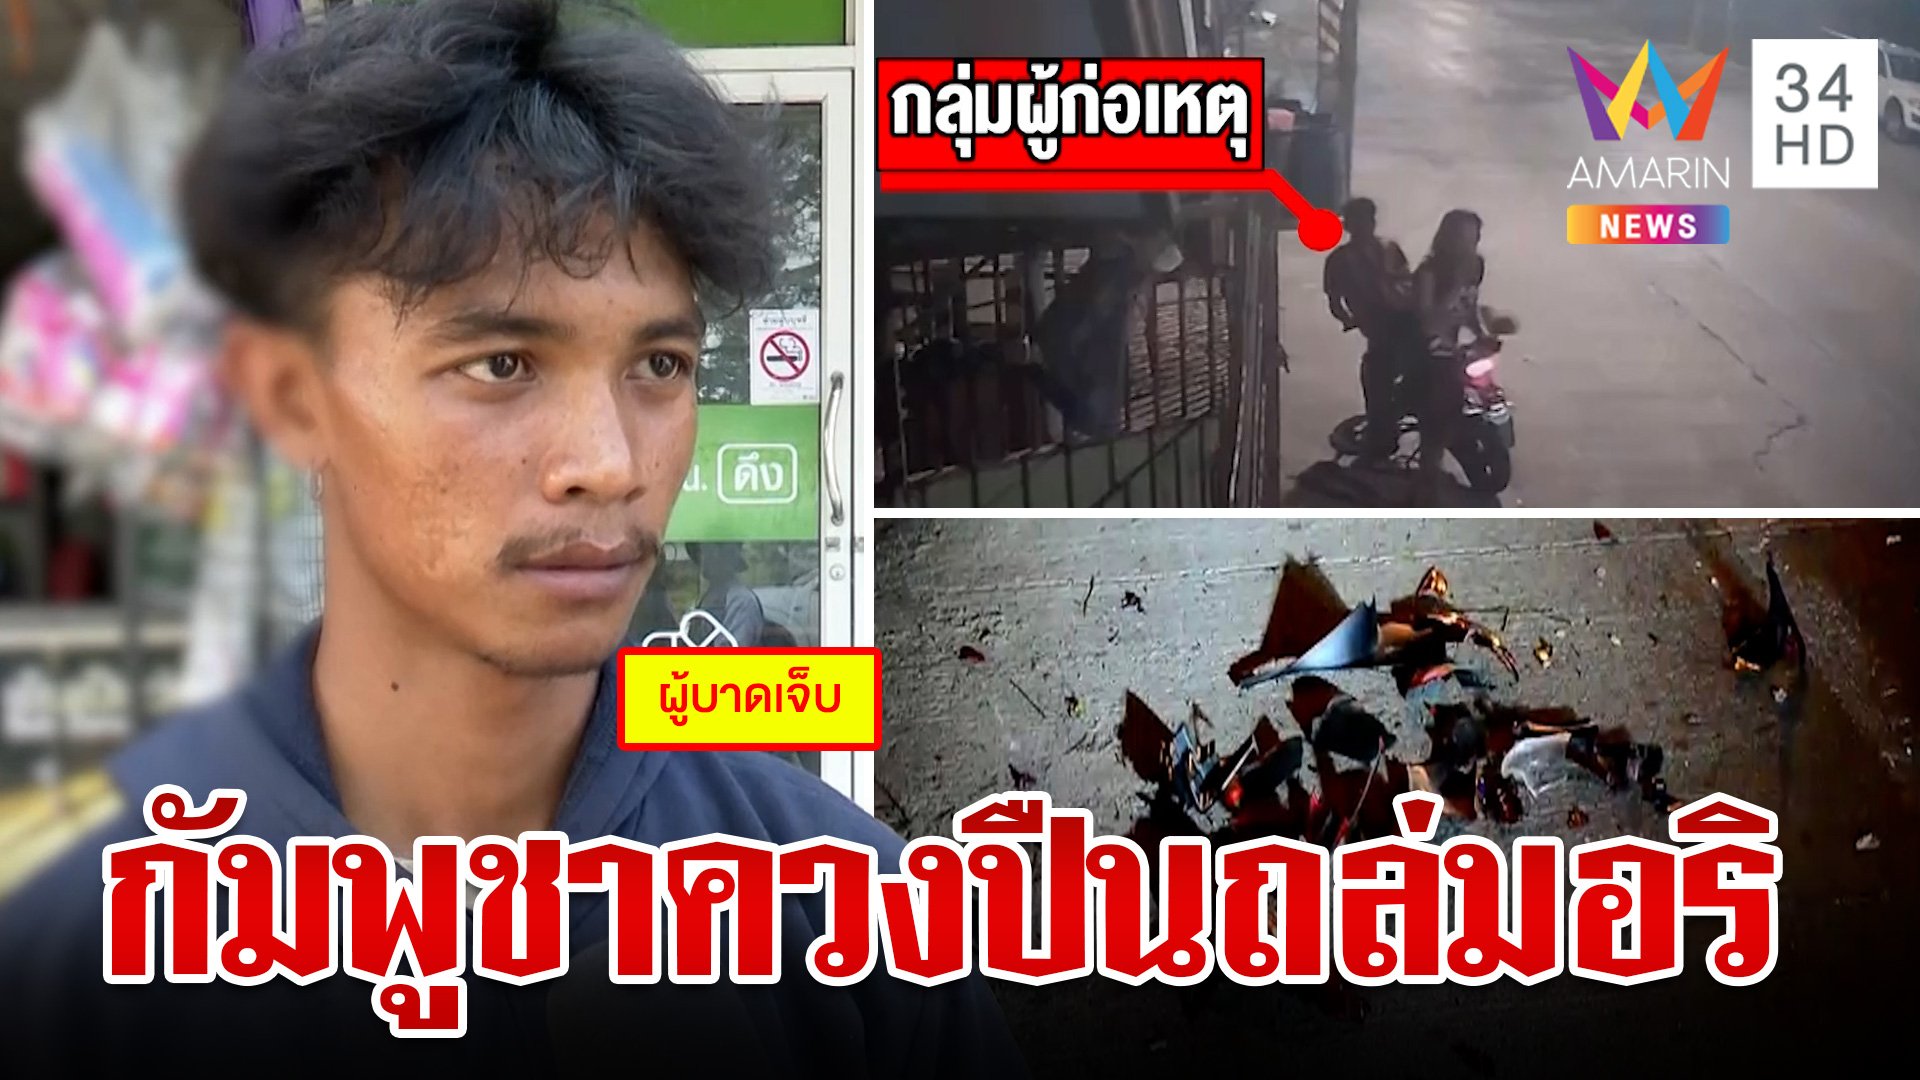 สงกรานต์เลือด!กัมพูชาถล่มยิงอริดับ ไม่หนำใจรุมตื้บศพซ้ำให้มั่นใจว่าตาย  | ทุบโต๊ะข่าว | 14 เม.ย. 67 | AMARIN TVHD34